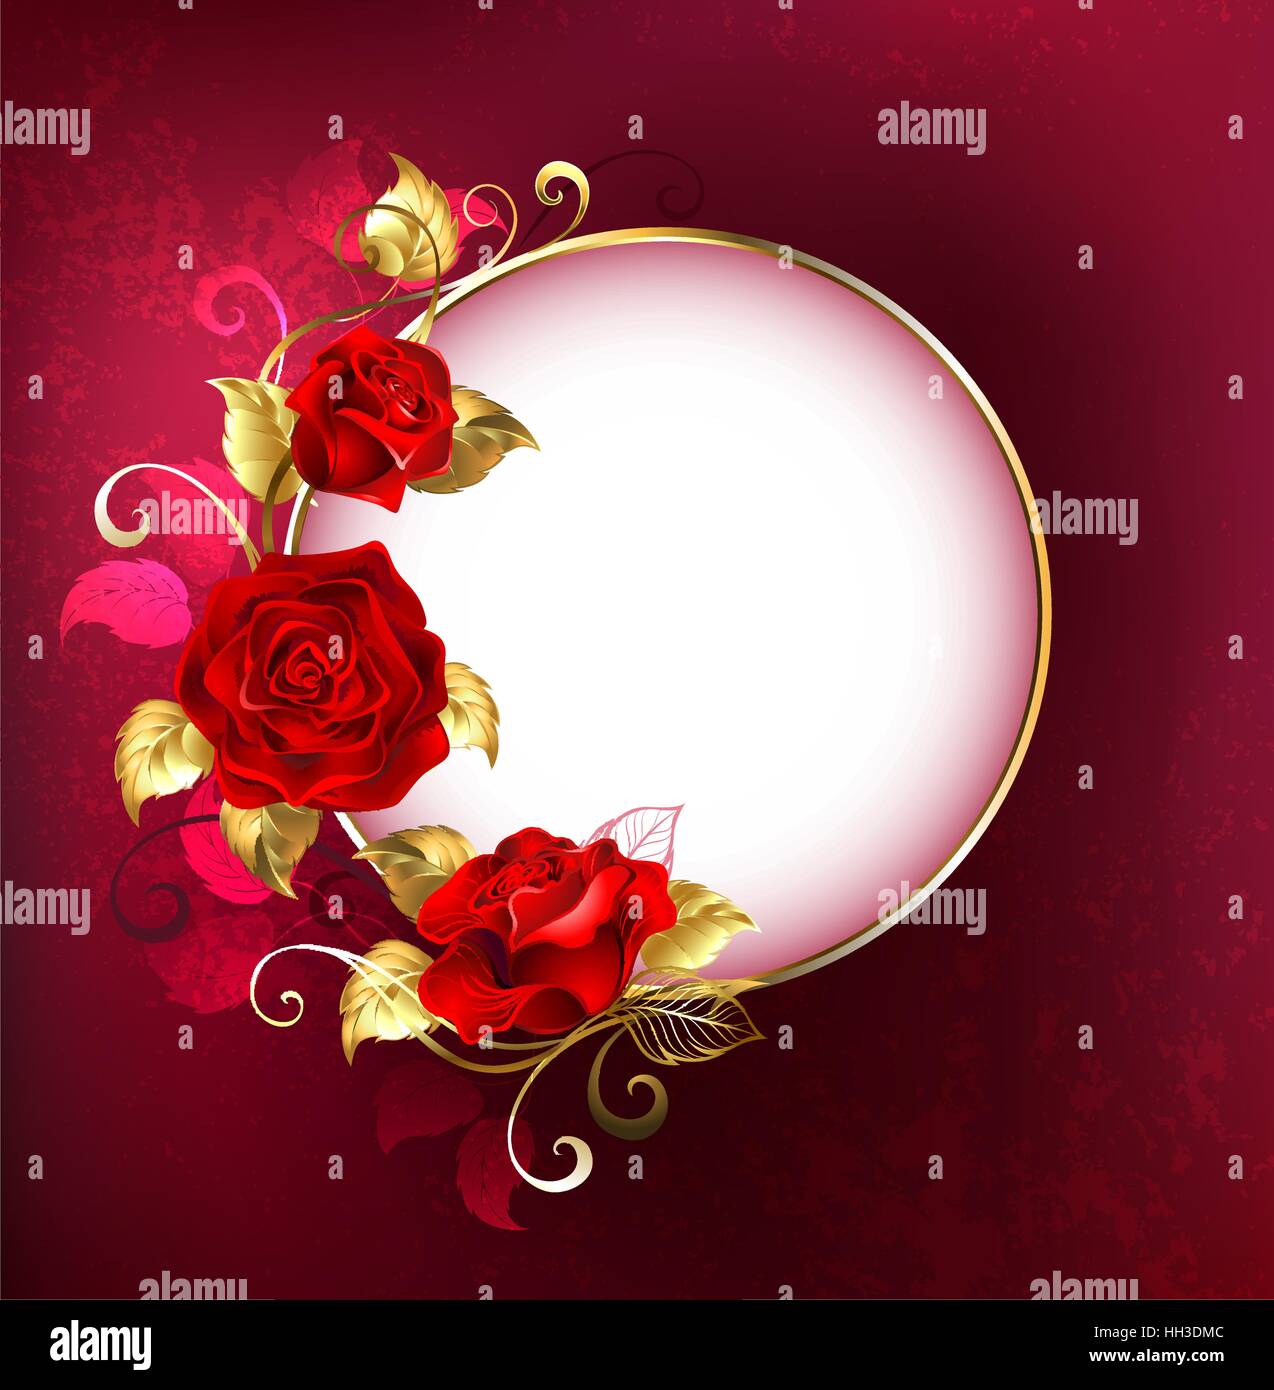 Runde weiße Fahne mit roten Rosen und goldenen Blätter auf rotem Hintergrund Textur. Design mit roten Rosen. Stock Vektor